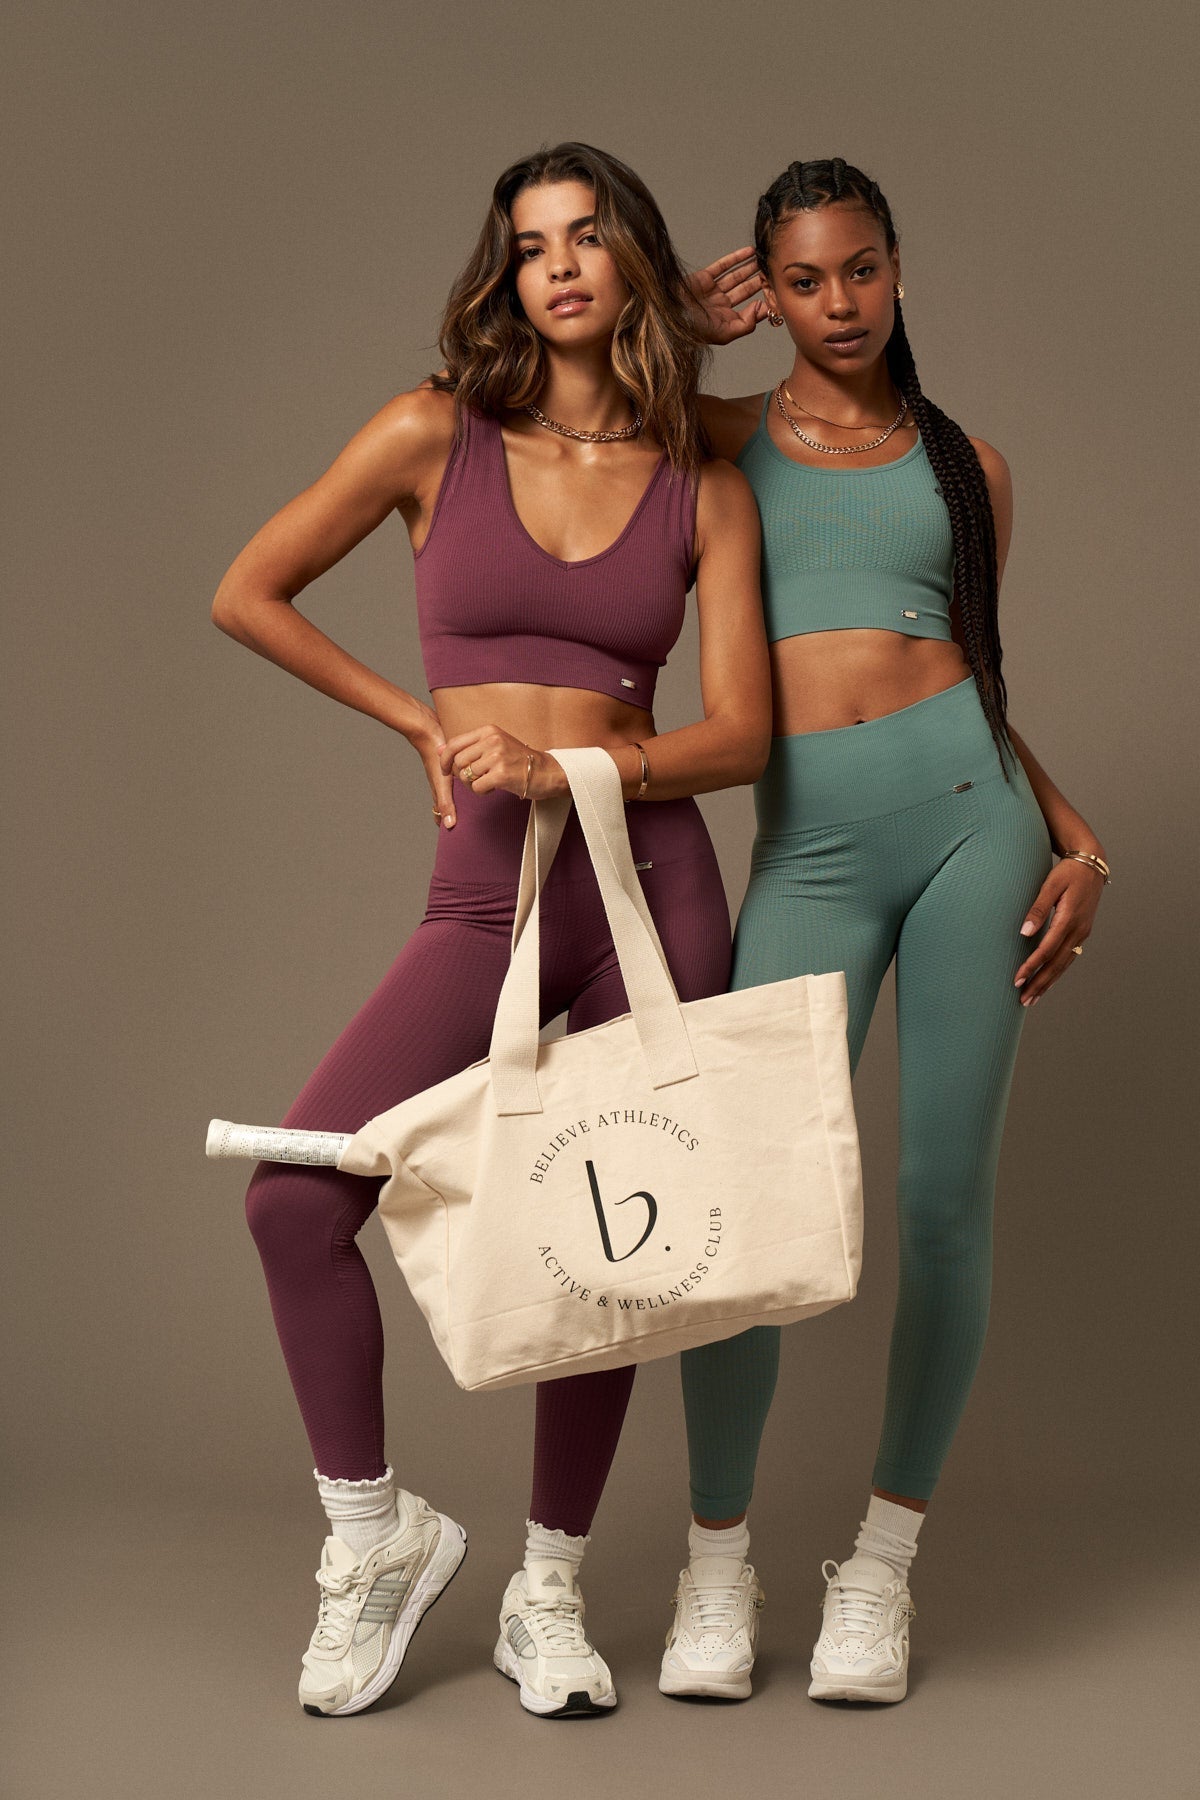 Mond-BH in Açai-Bras-Kleidung kaufen Nachhaltige recycelte Yoga-Leggings Frauen On-line Barcelona Believe Leichtathletik Nachhaltige recycelte Yoga-Kleidung